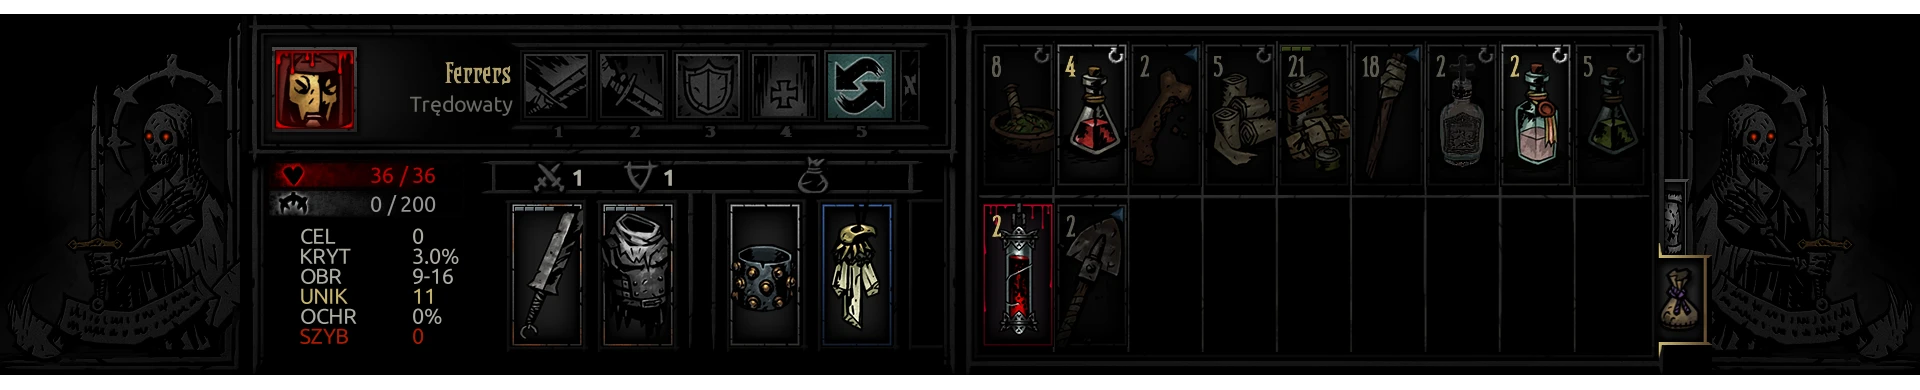 darkest dungeon more inventory mod